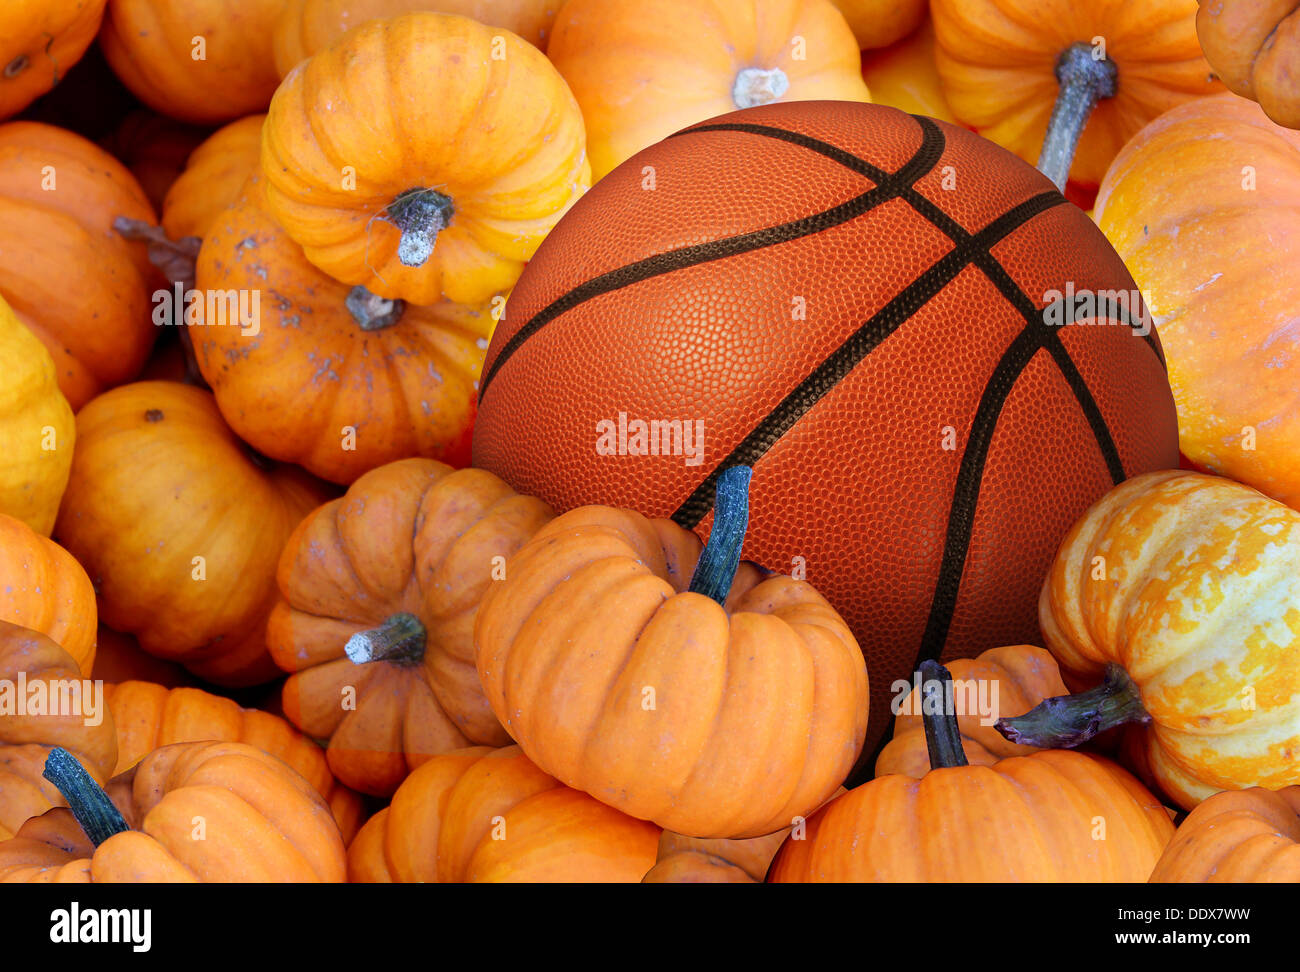 Fête de basket-ball et les sports d'automne lors de la récolte du temps avec un tournoi de balle dans une pile de citrouilles orange comme un concept pour un mode de vie sain et de manger des aliments naturels avec remise en forme par l'exercice. Banque D'Images